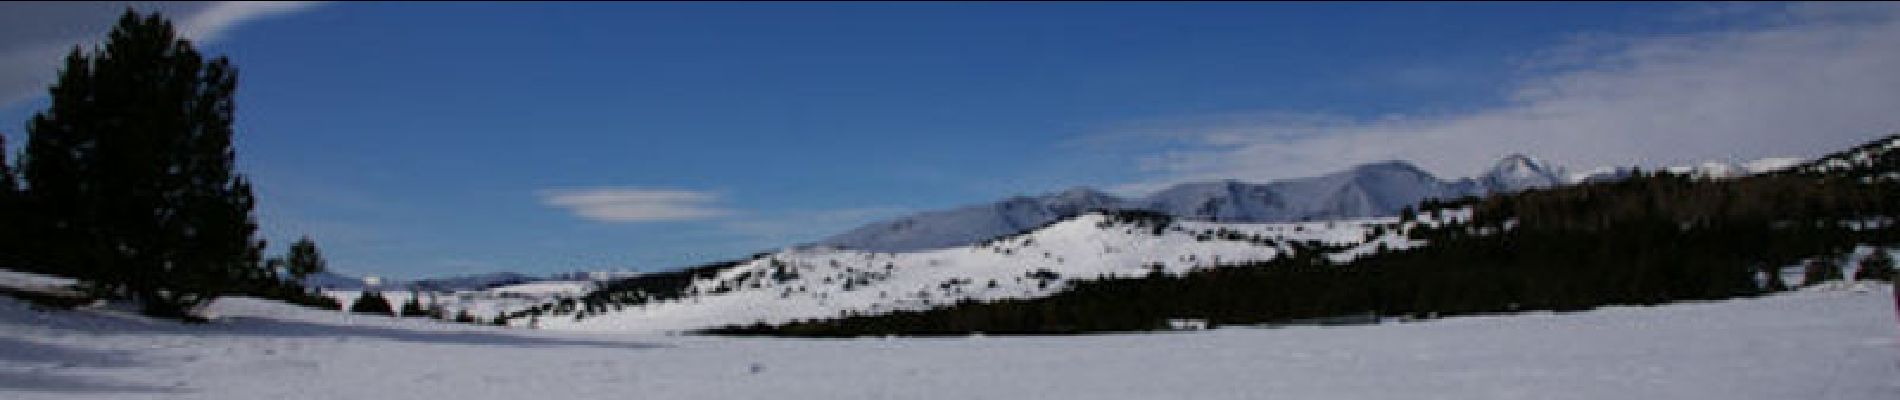 Tocht Sneeuwschoenen Font-Romeu-Odeillo-Via - Les Airelles - Mollera dels Clots  - Photo